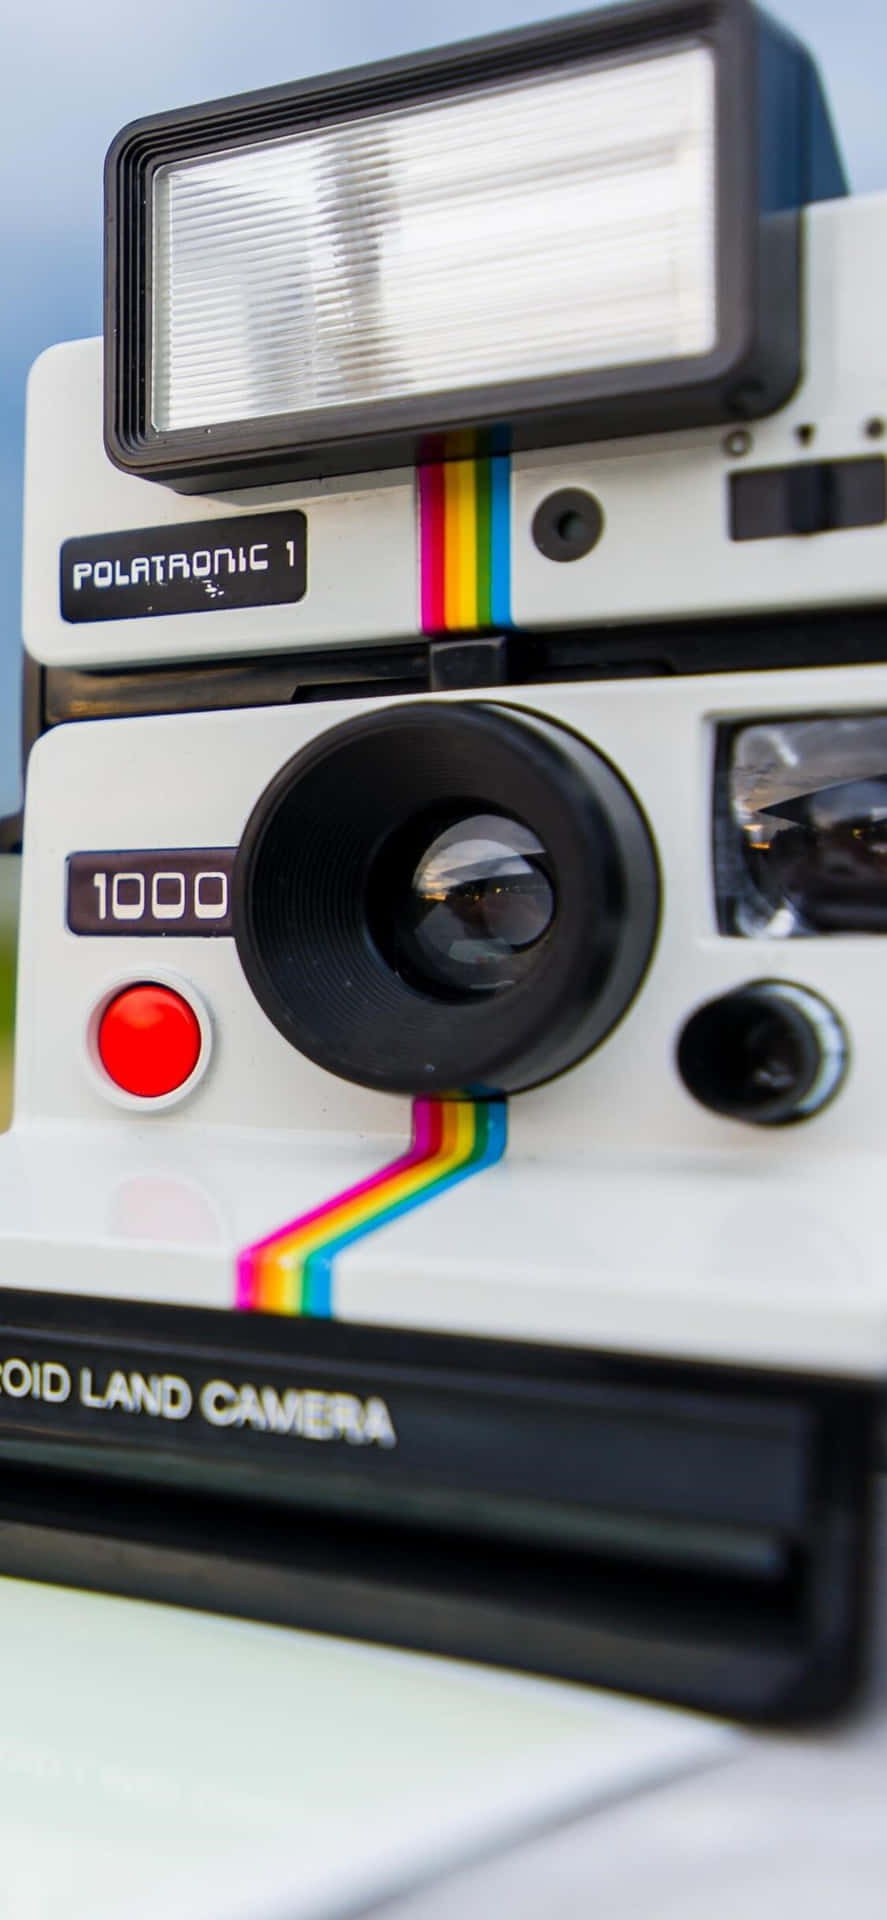 Polaroidcámara Land 1000 Imagen De Retrato